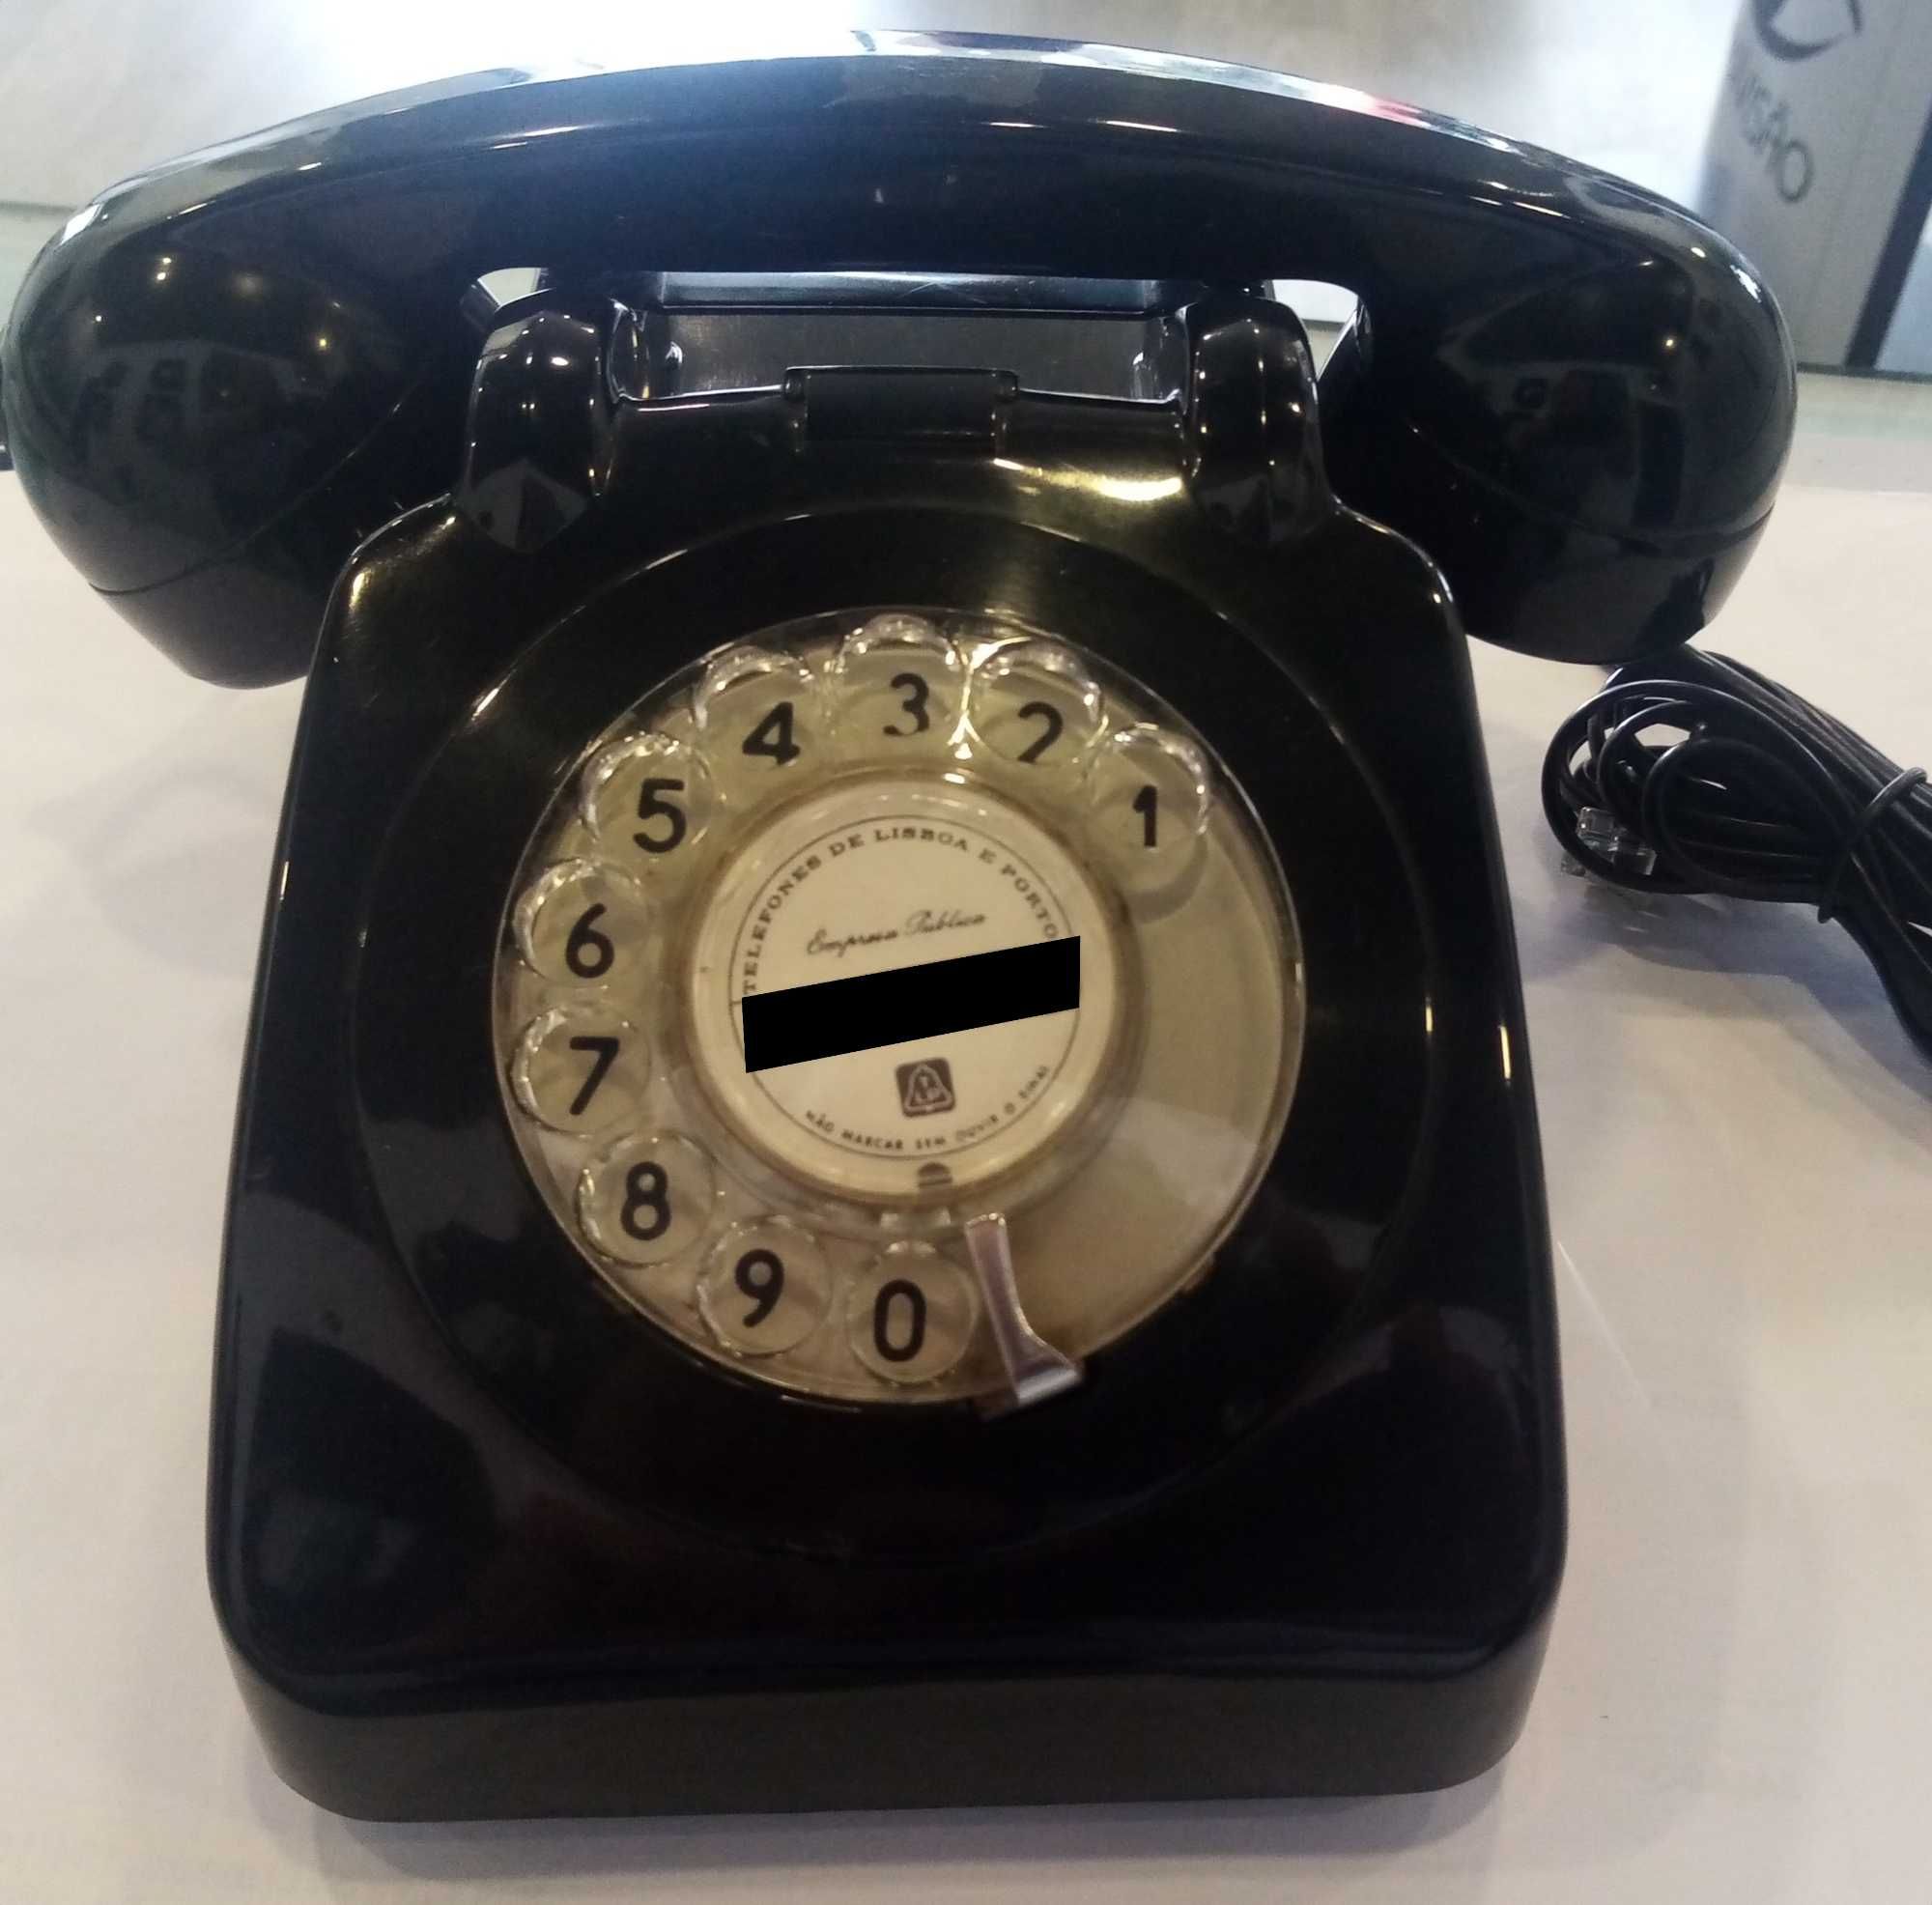 Telefone antigo, com marcador de disco.